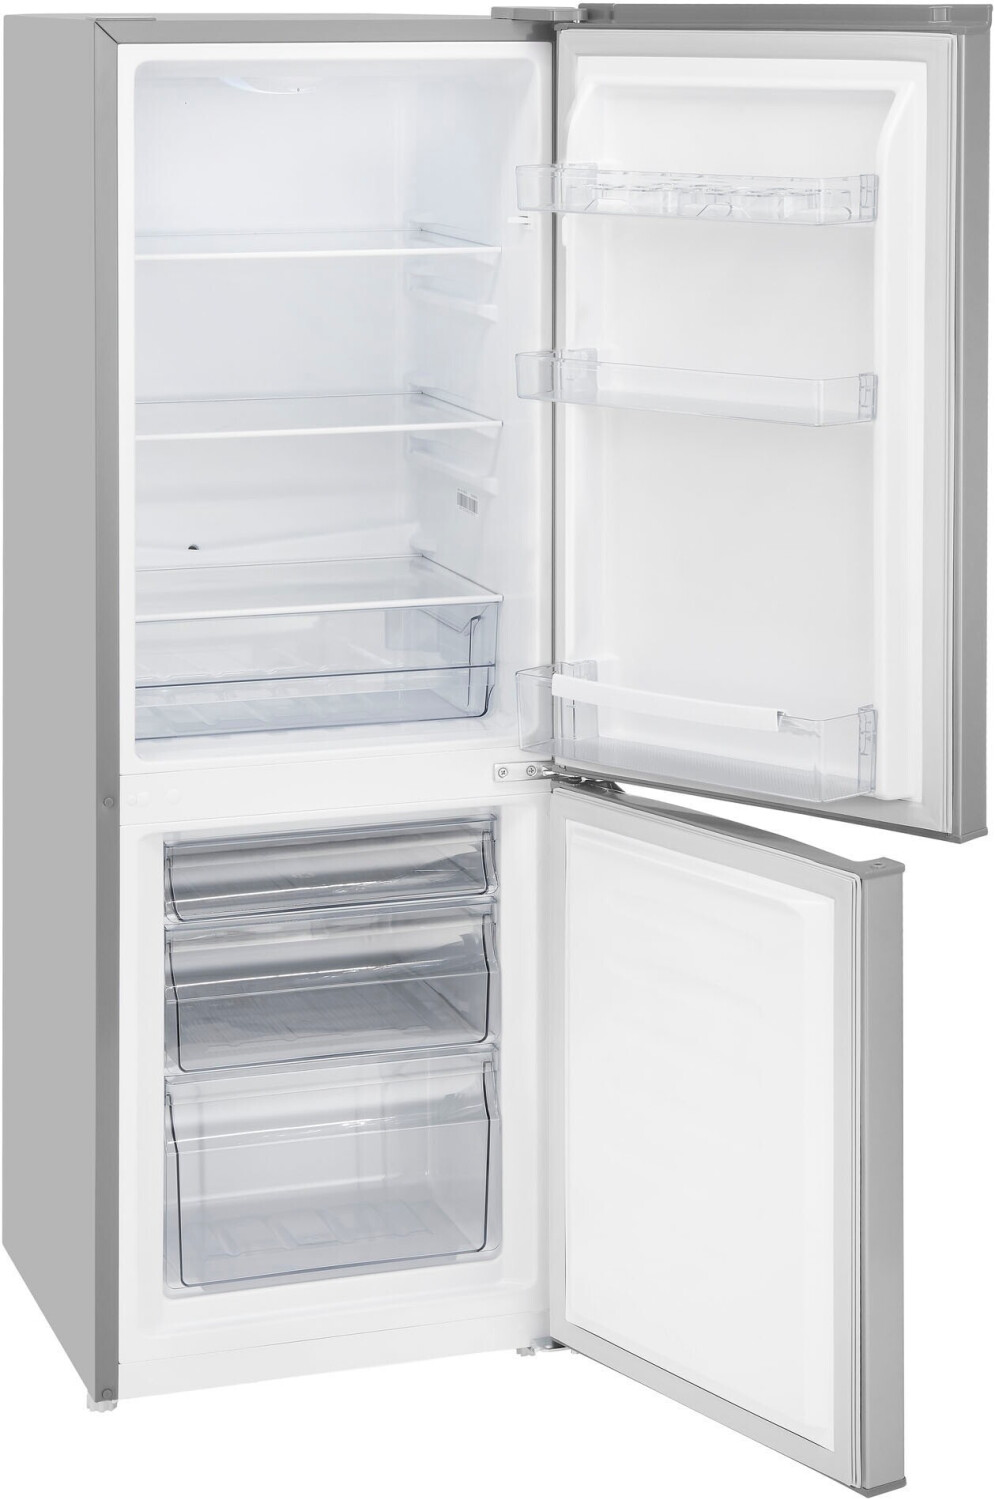 Exquisit KGC231-60-010CW - Combiné réfrigérateur-congélateur - Classe  énergétique C 